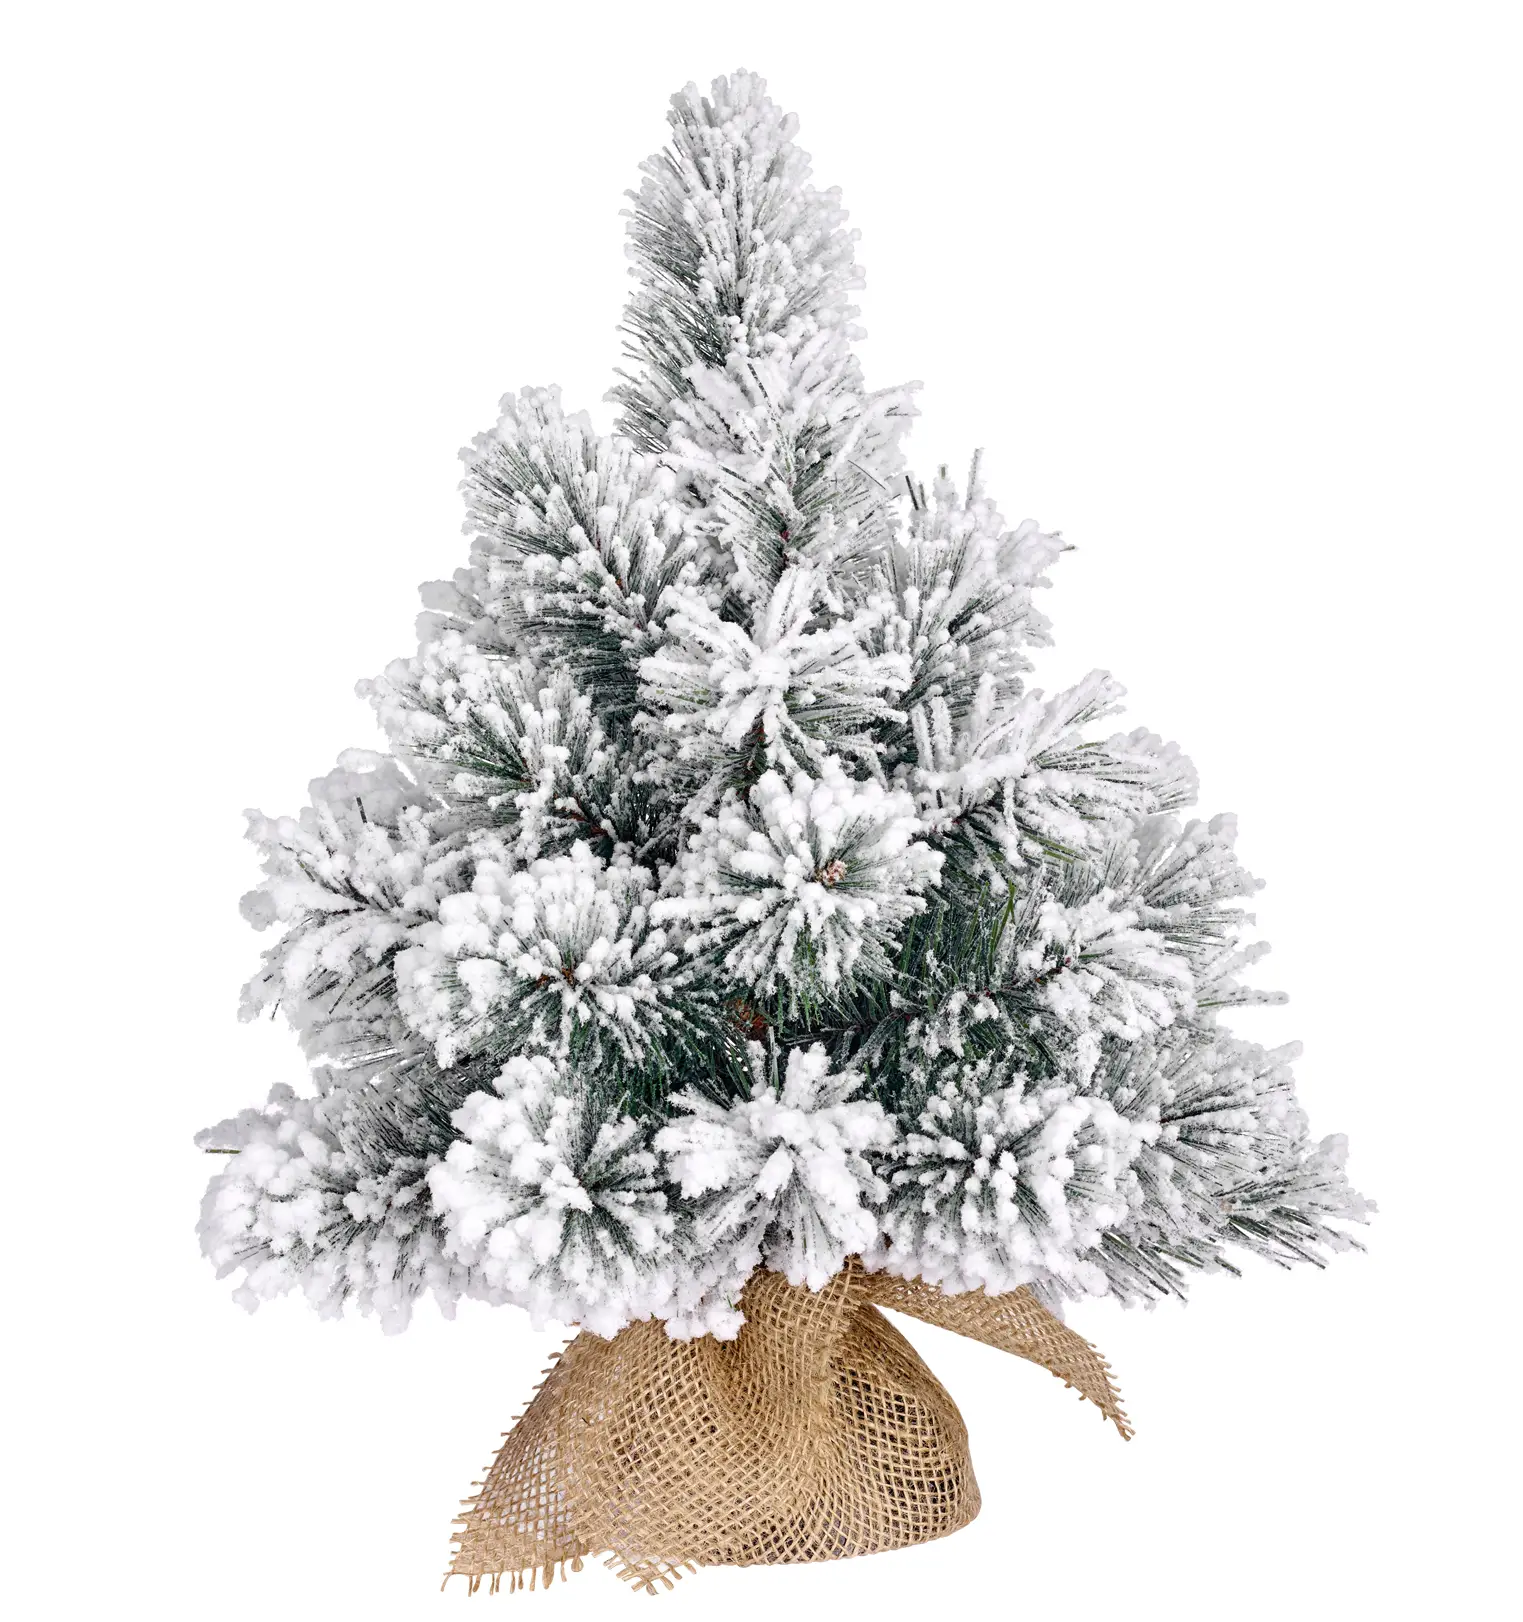 K眉nstlicher Weihnachtsbaum Dinsmore